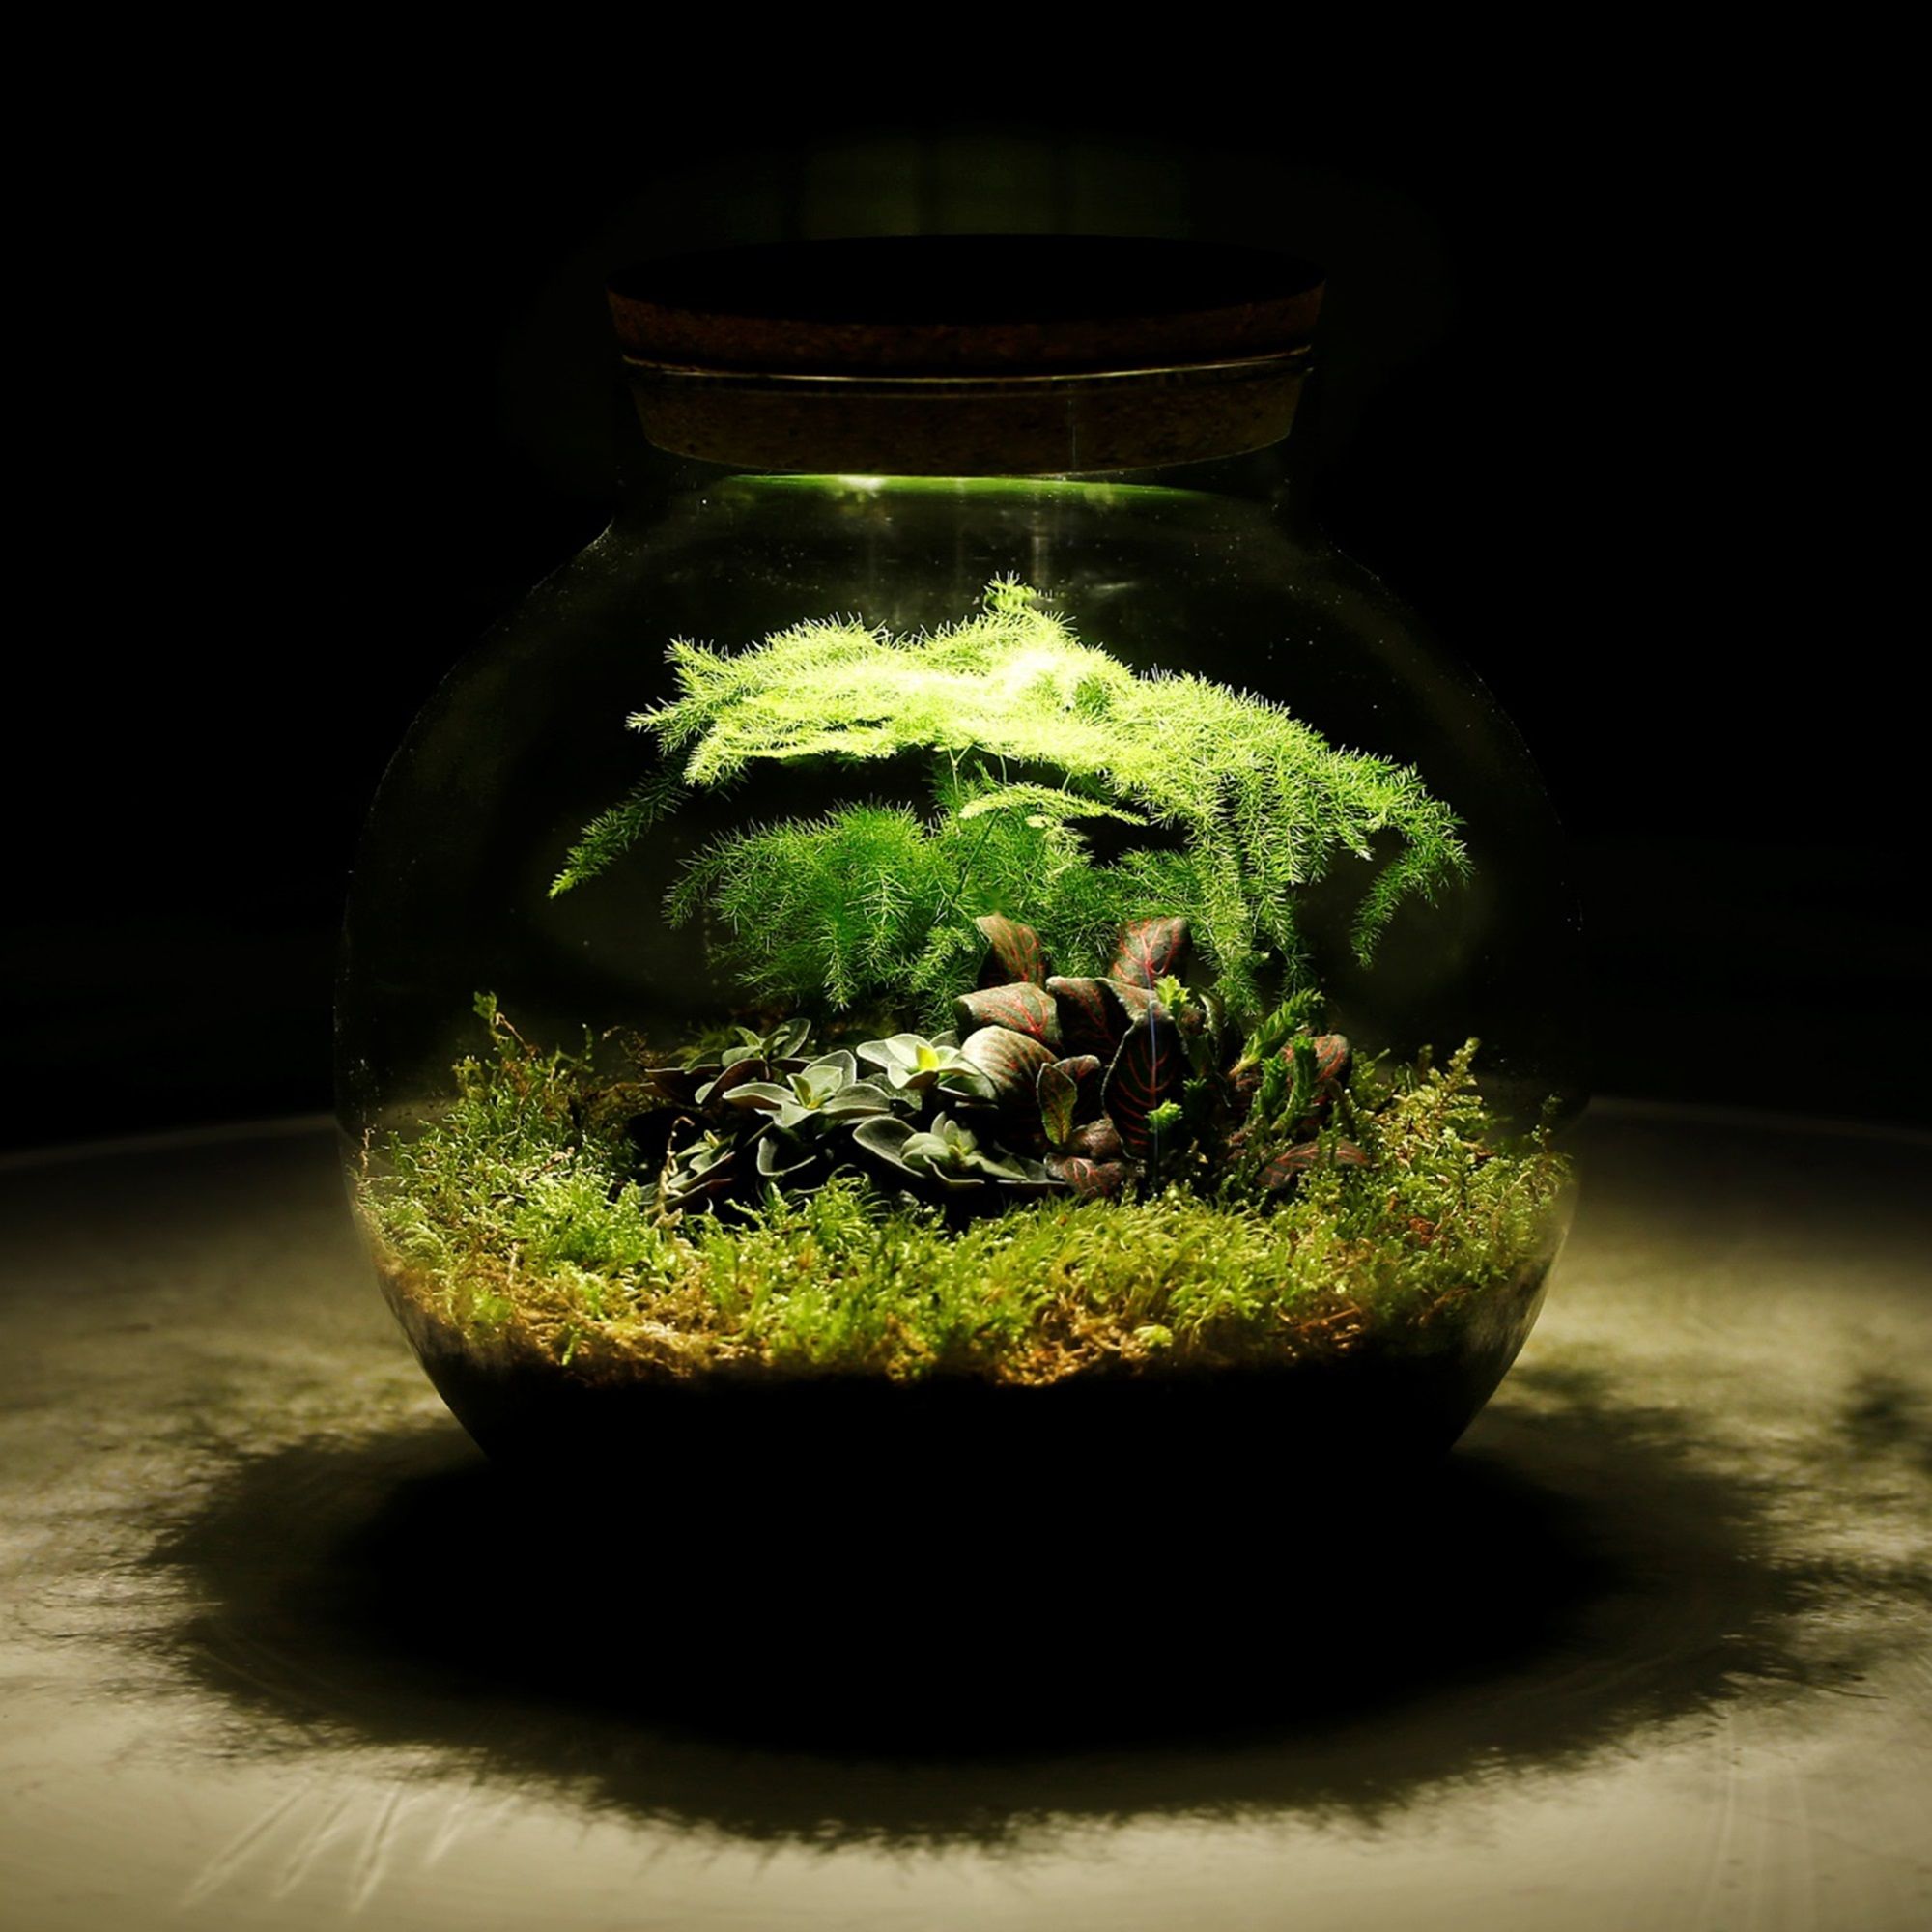 Pflanzen-im-Glas-Topf-Dschungel-Biodom-mit-Lampe-2